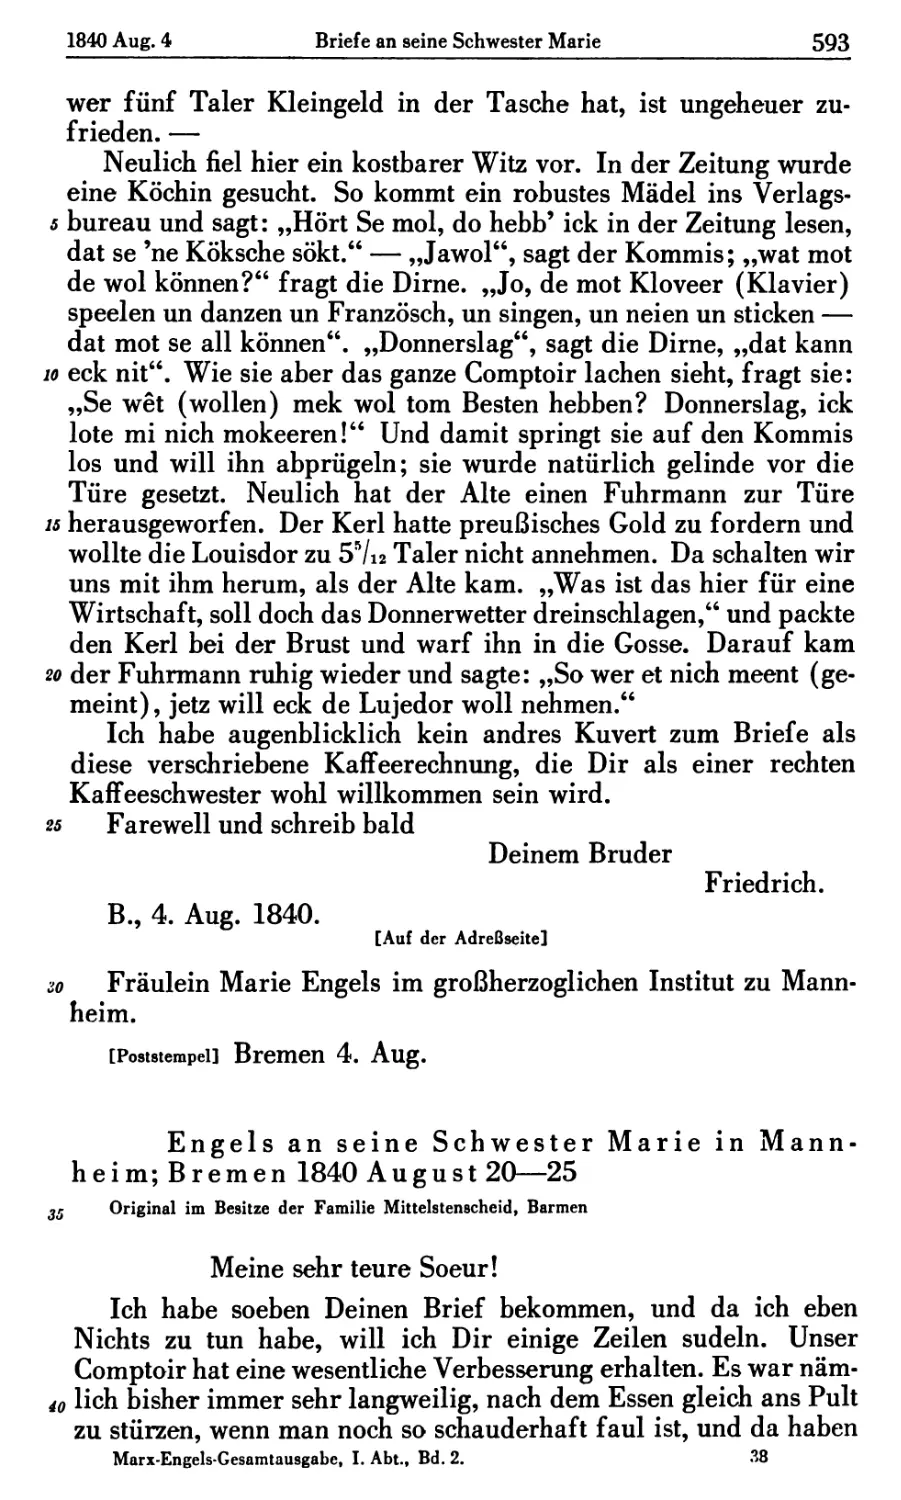 Engels an seine Schwester Marie in Mannheim; Bremen 1840 August 20—25